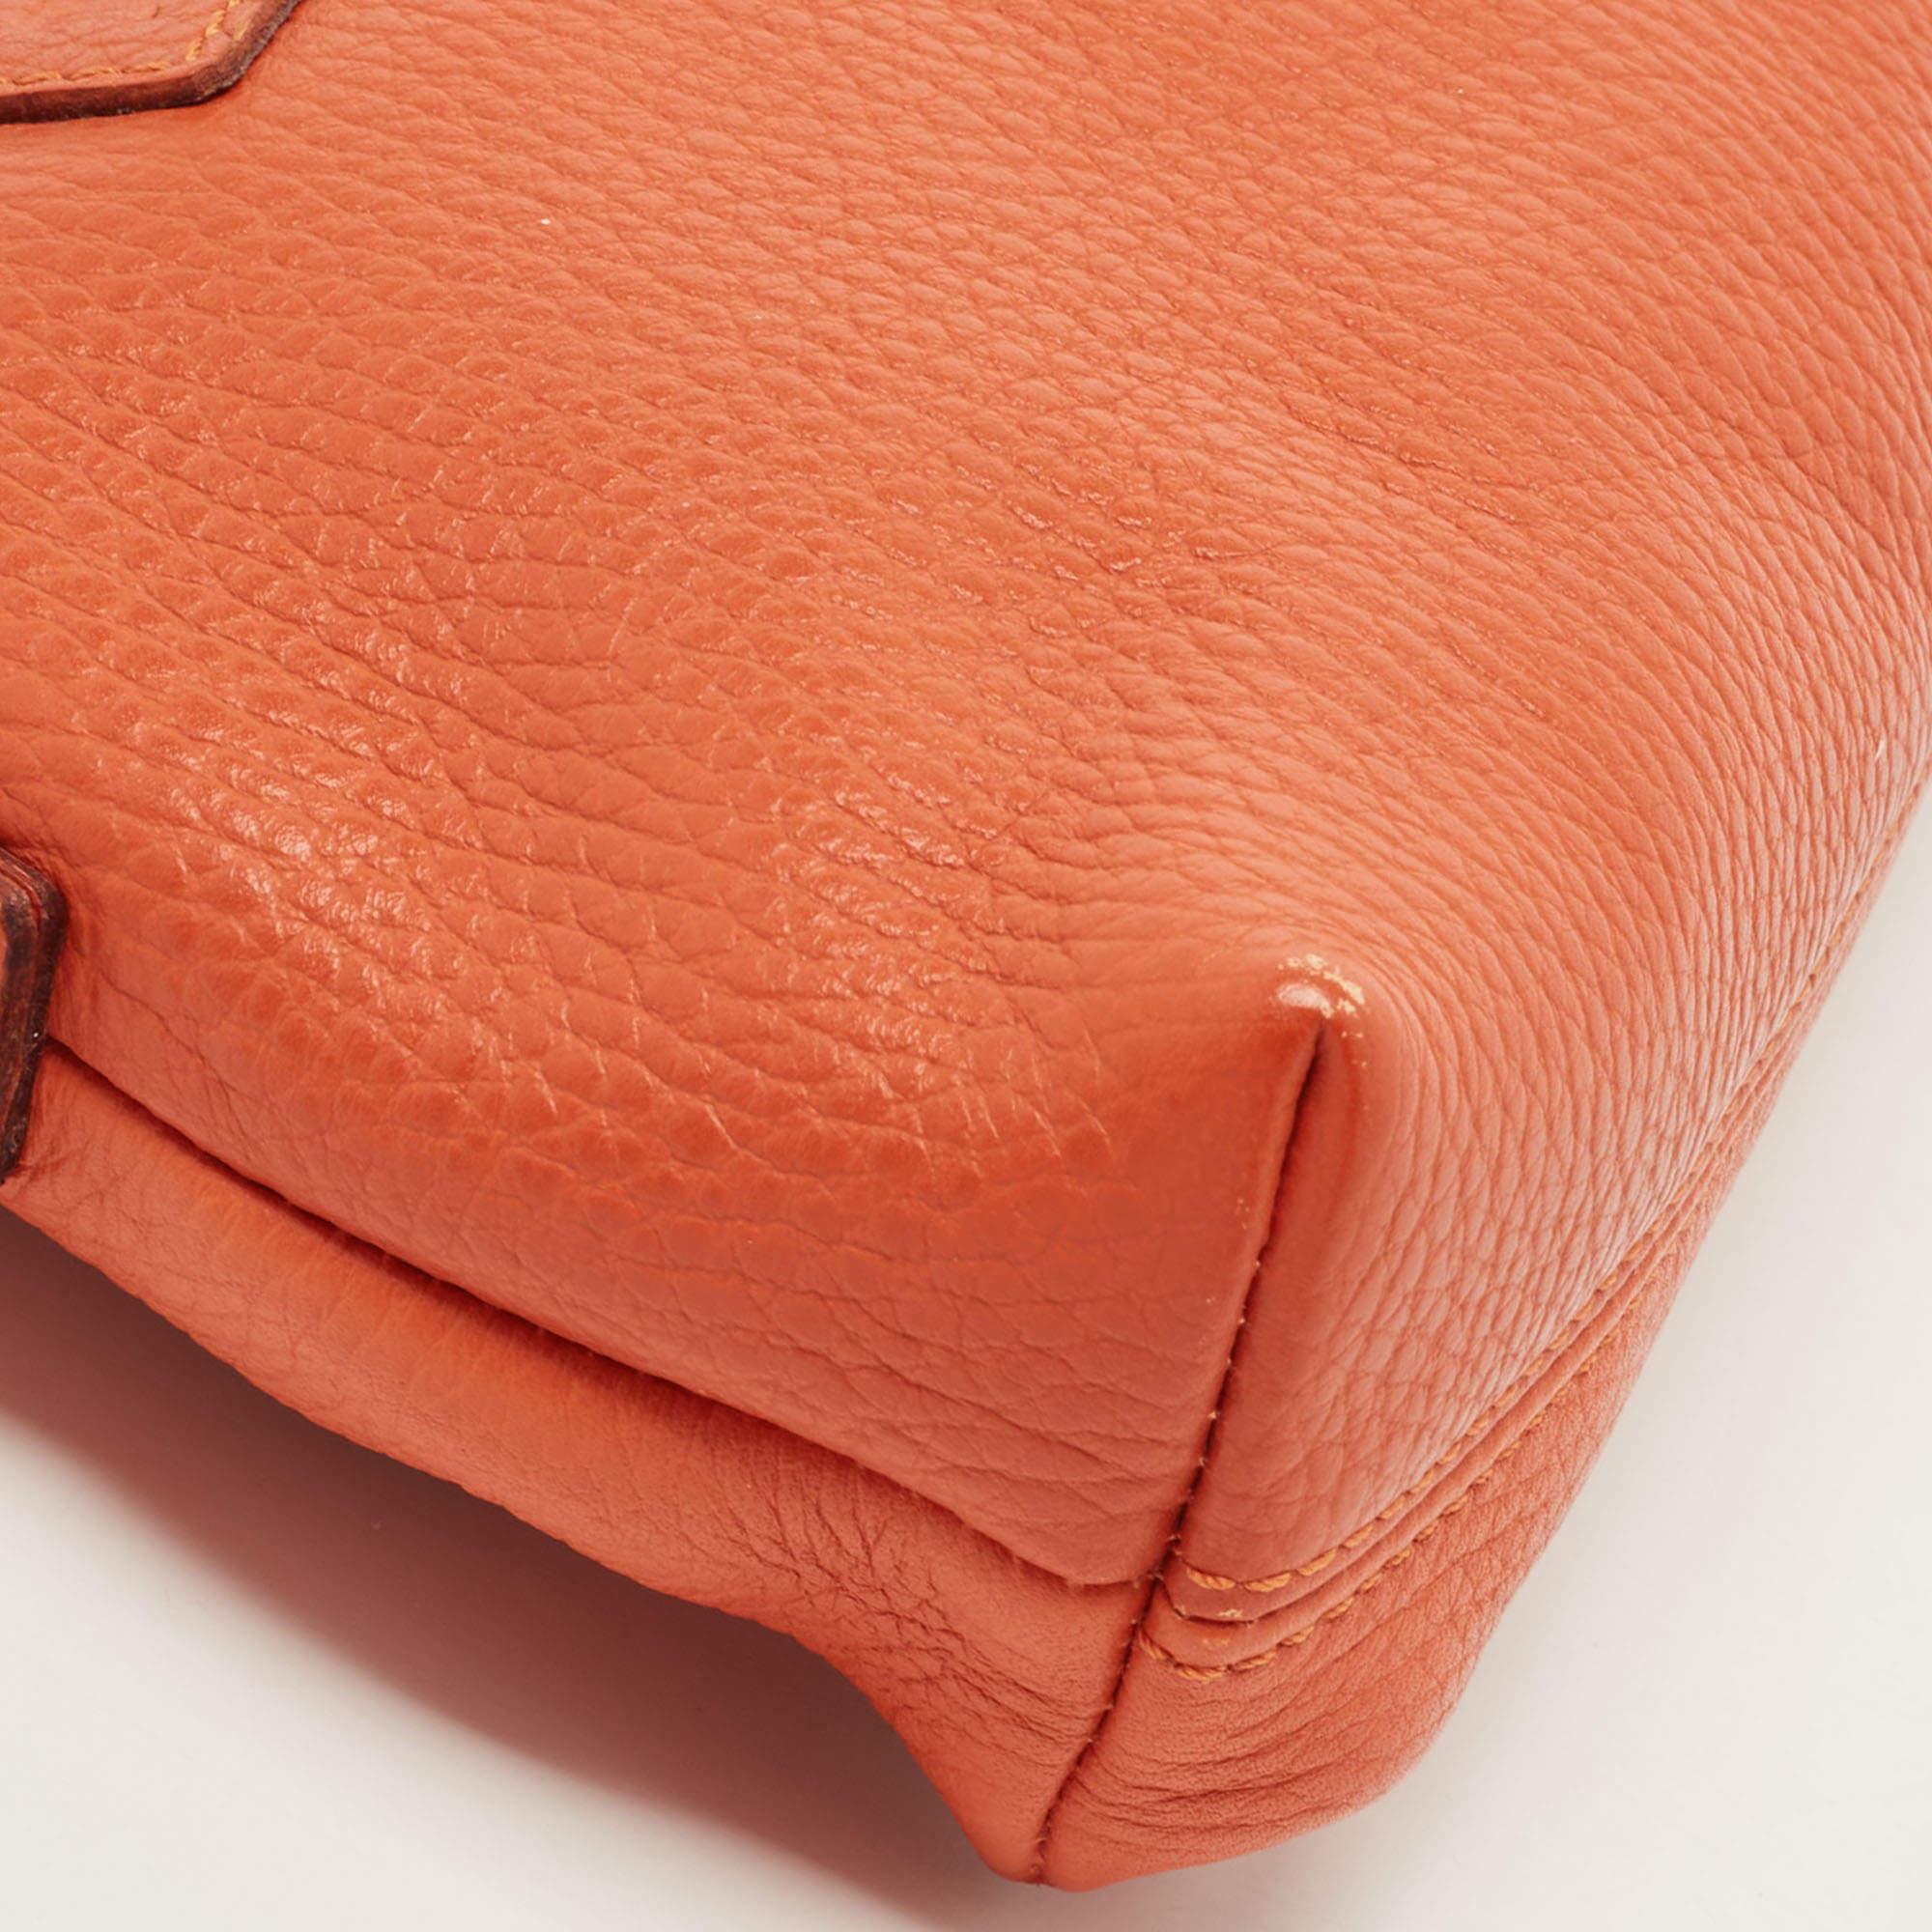 Burberry Orange Leather Shoulder Bag 2